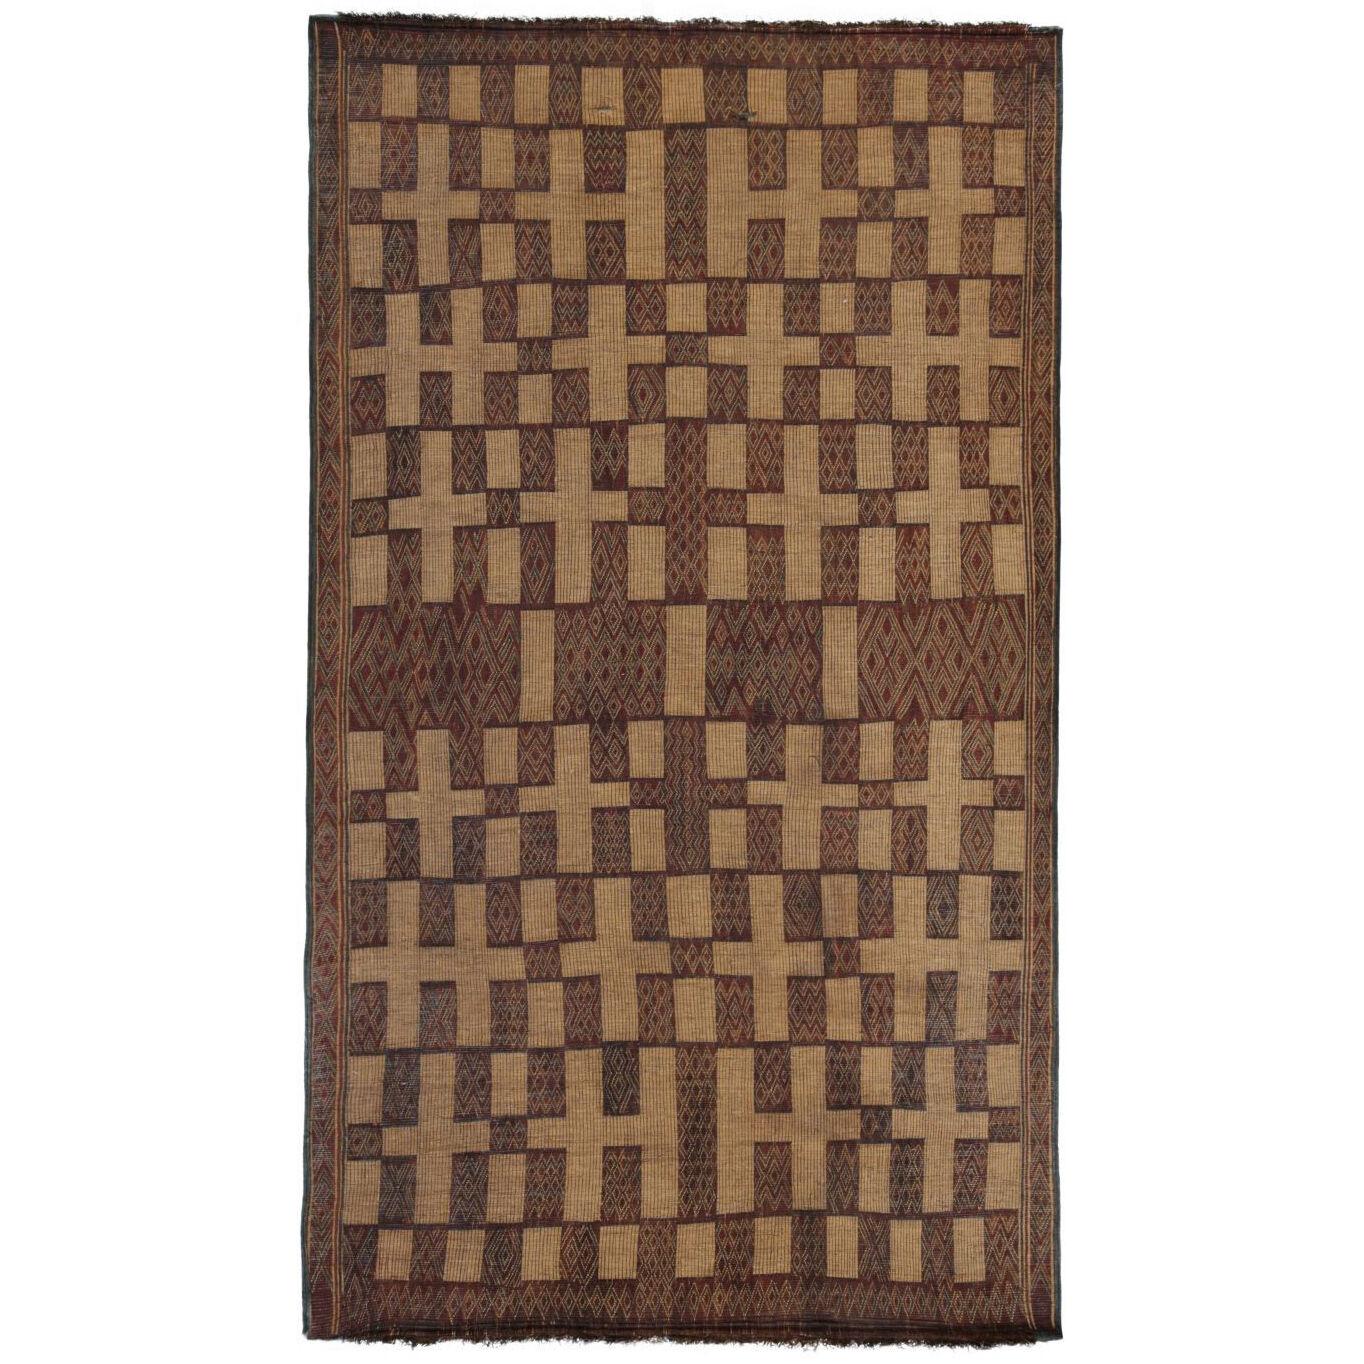 Vintage Moroccan Tuareg Mat Rug in Brown Natural Fibers by Rug & Kilim